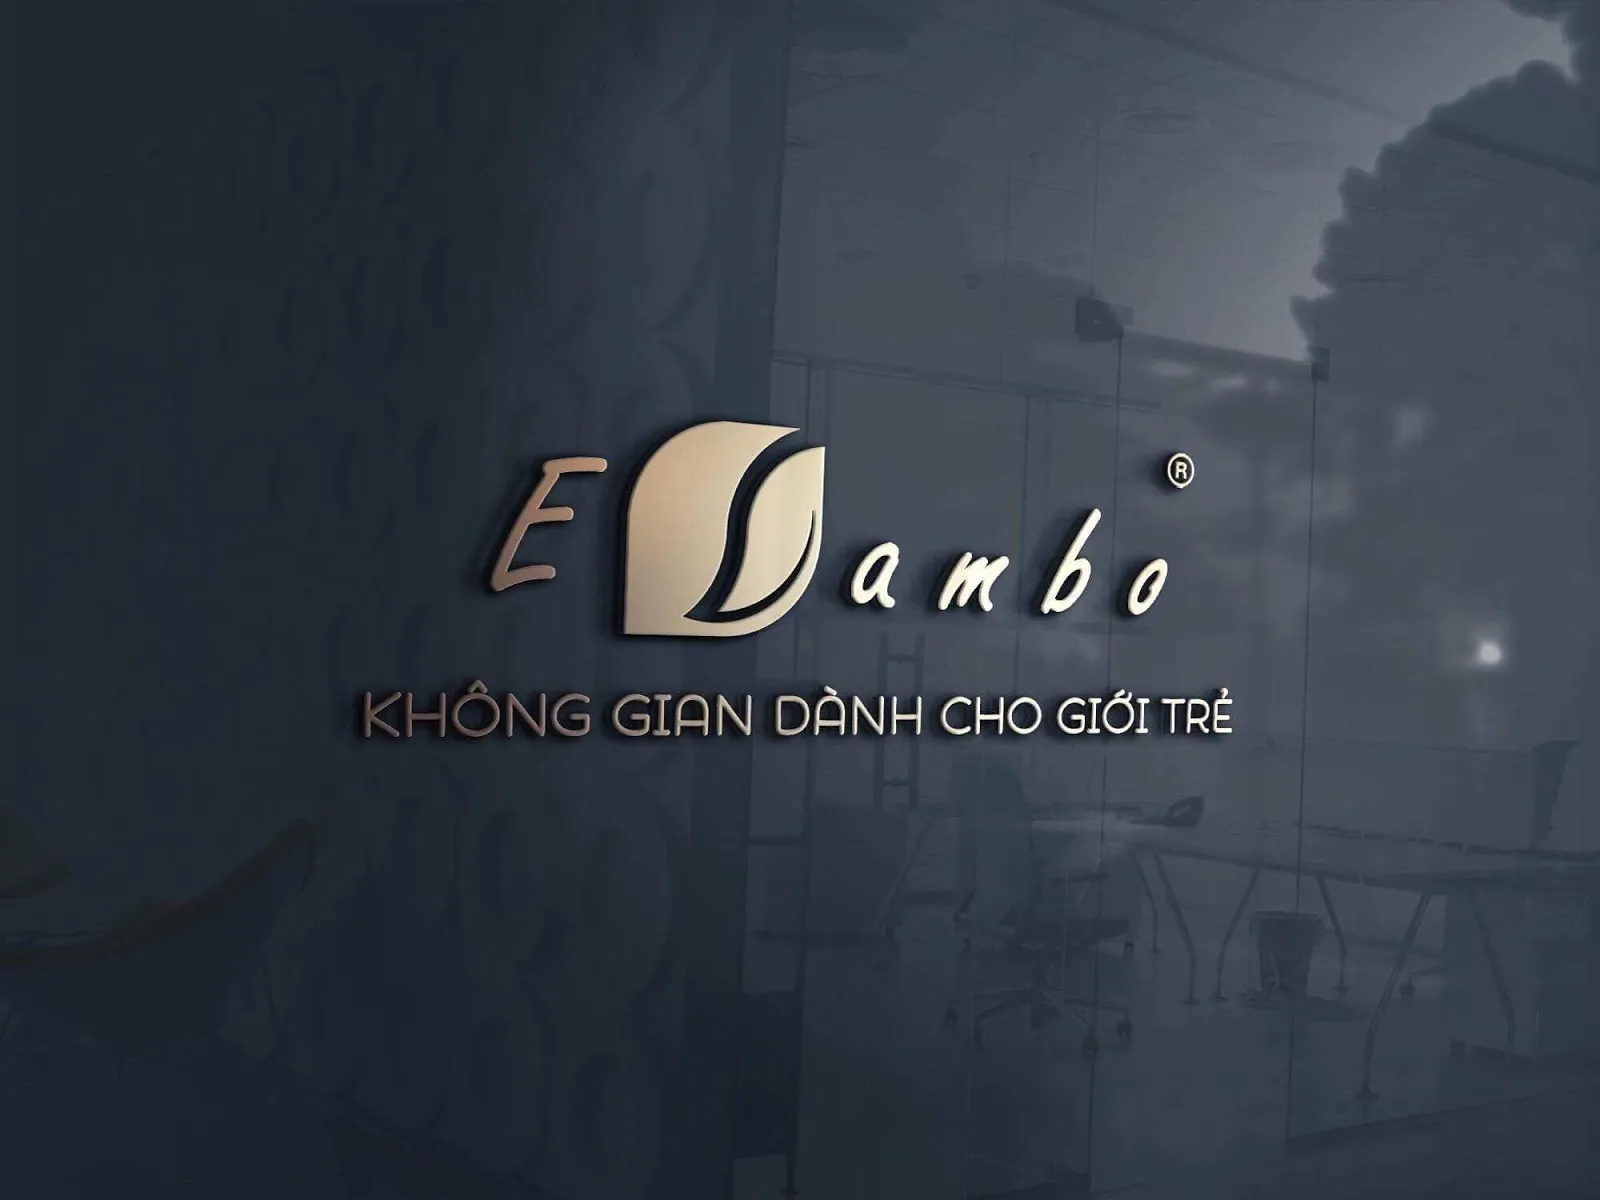 Elambo - Thương hiệu chăn ga gối đệm cao cấp thị trường Việt Nam